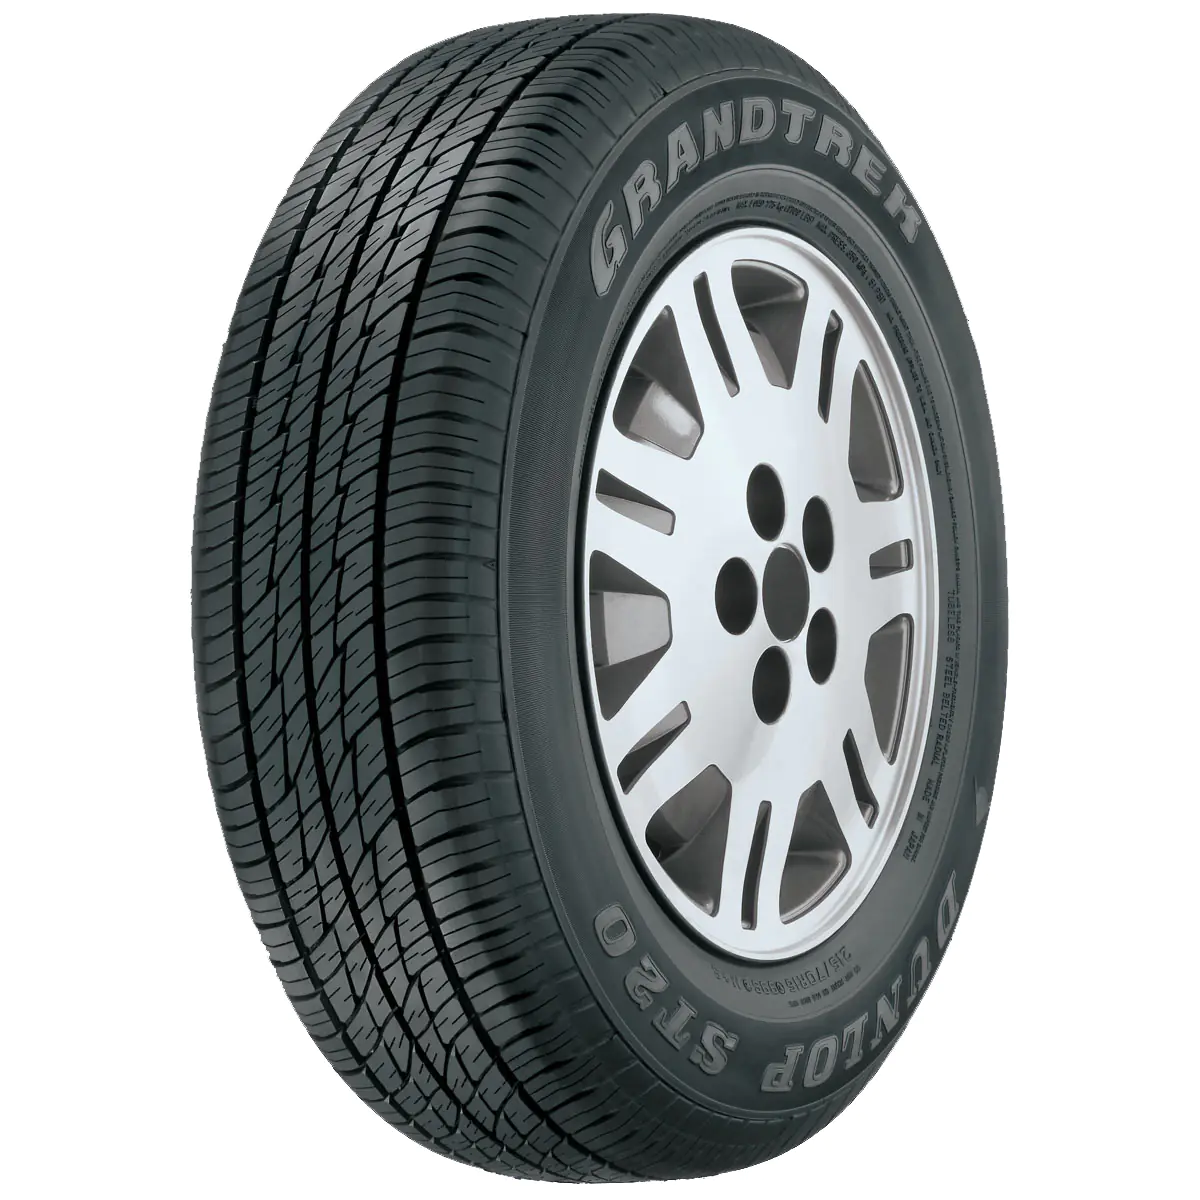 Dunlop Dunlop 215/65 R16 98H GRANDTREK ST20 pneumatici nuovi Estivo 